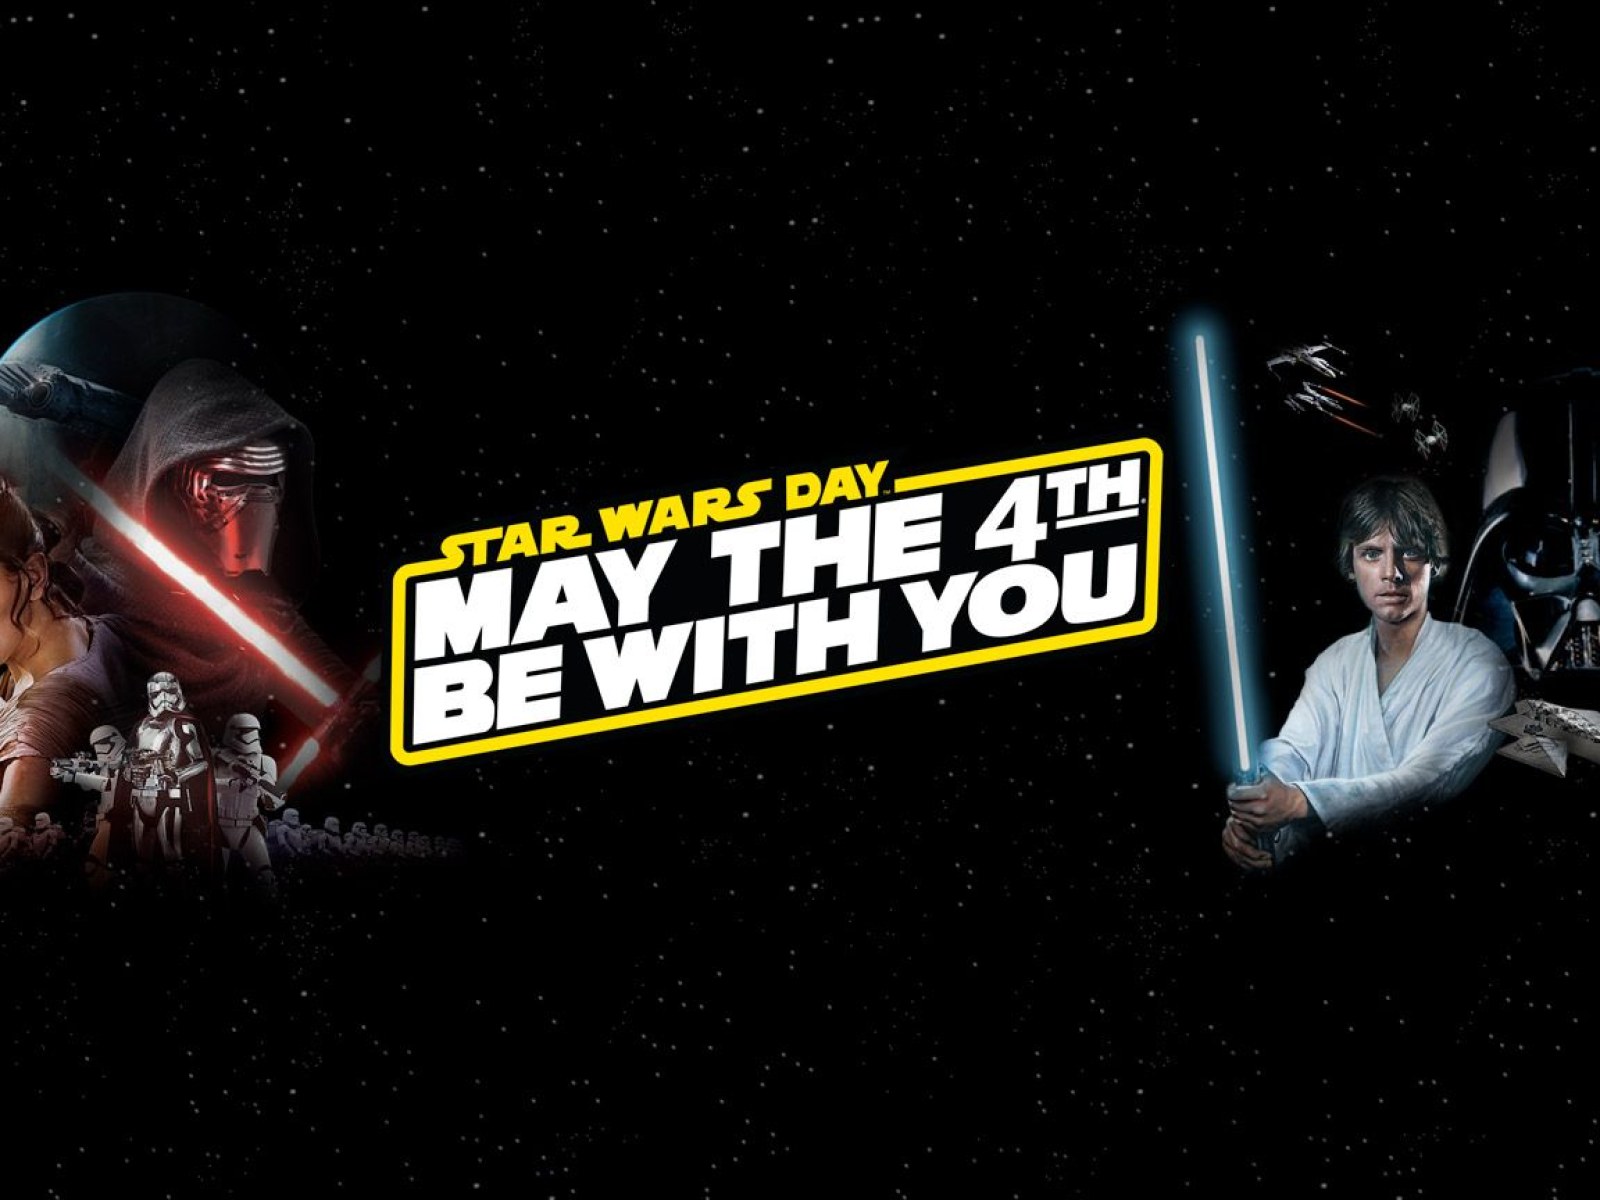 Star Wars Day Happy Star Wars Day Kplx Fm / Star wars day seeks to